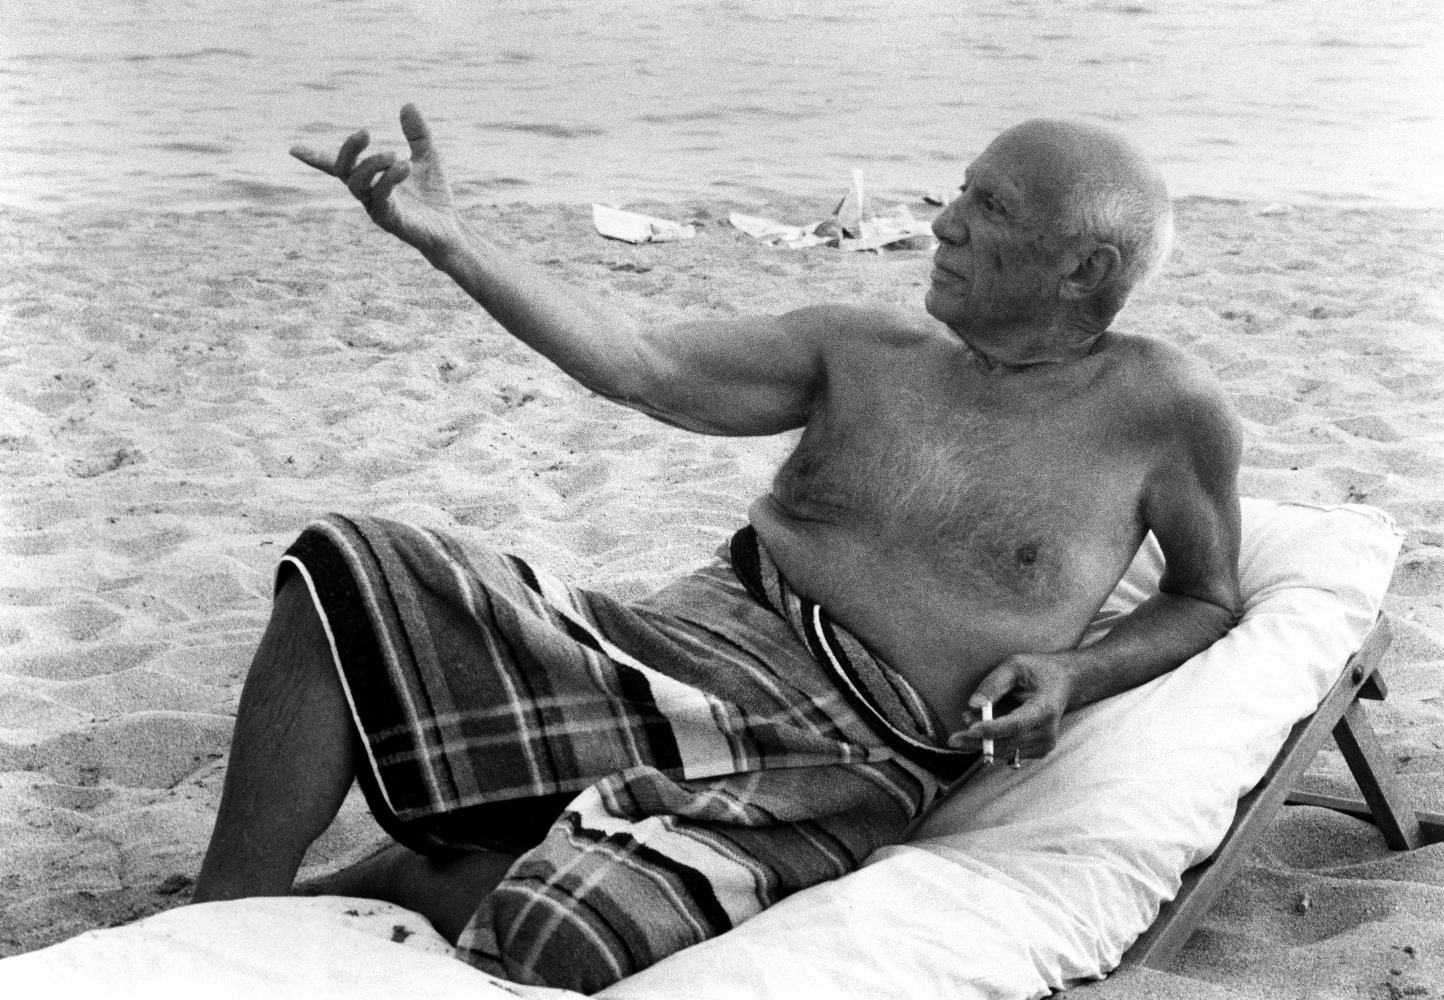 Picasso au bain, plage de Cannes, 1965

vintage silver gelatin print

18 x 24 inches; 45.7 x 61 centimeters

LSFA# 11197